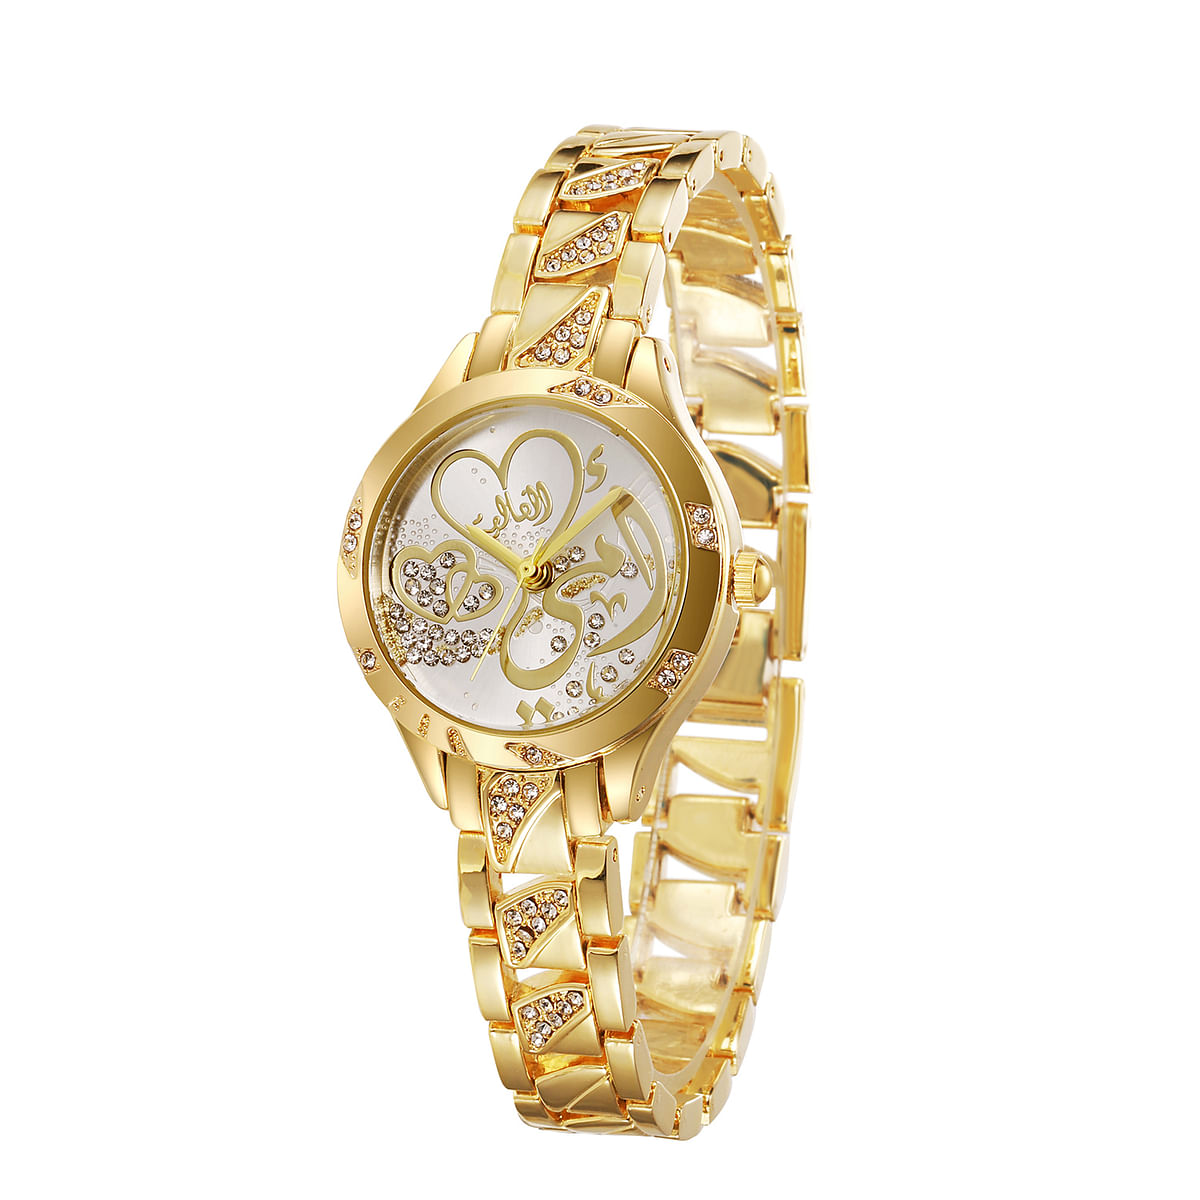 Elanova “Dear Mom” women’s wristwatch encrusted with crystal